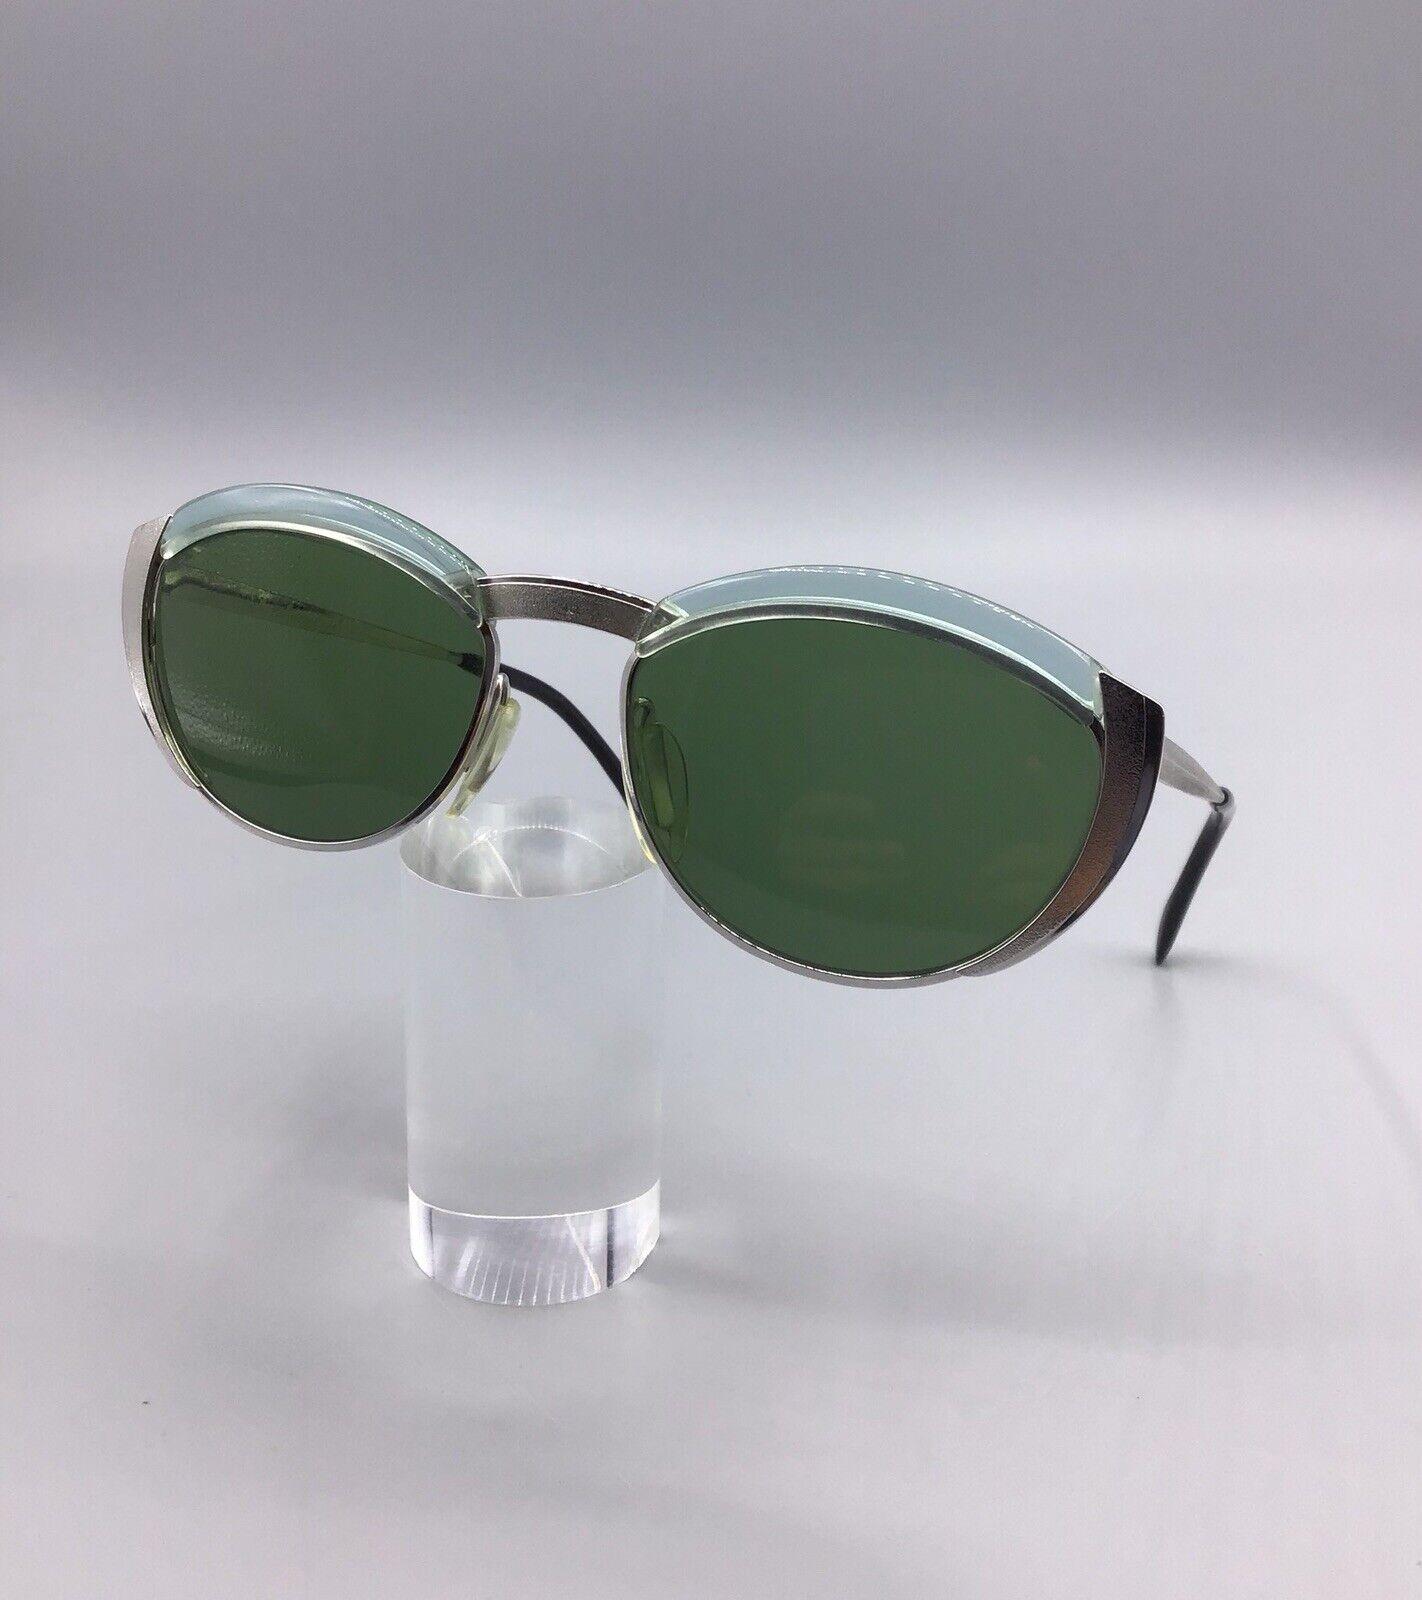 SK Vintage Sunglasses Occhiale da Sole Lunettes Sonnenbrillen 1/10 12kgf 50s